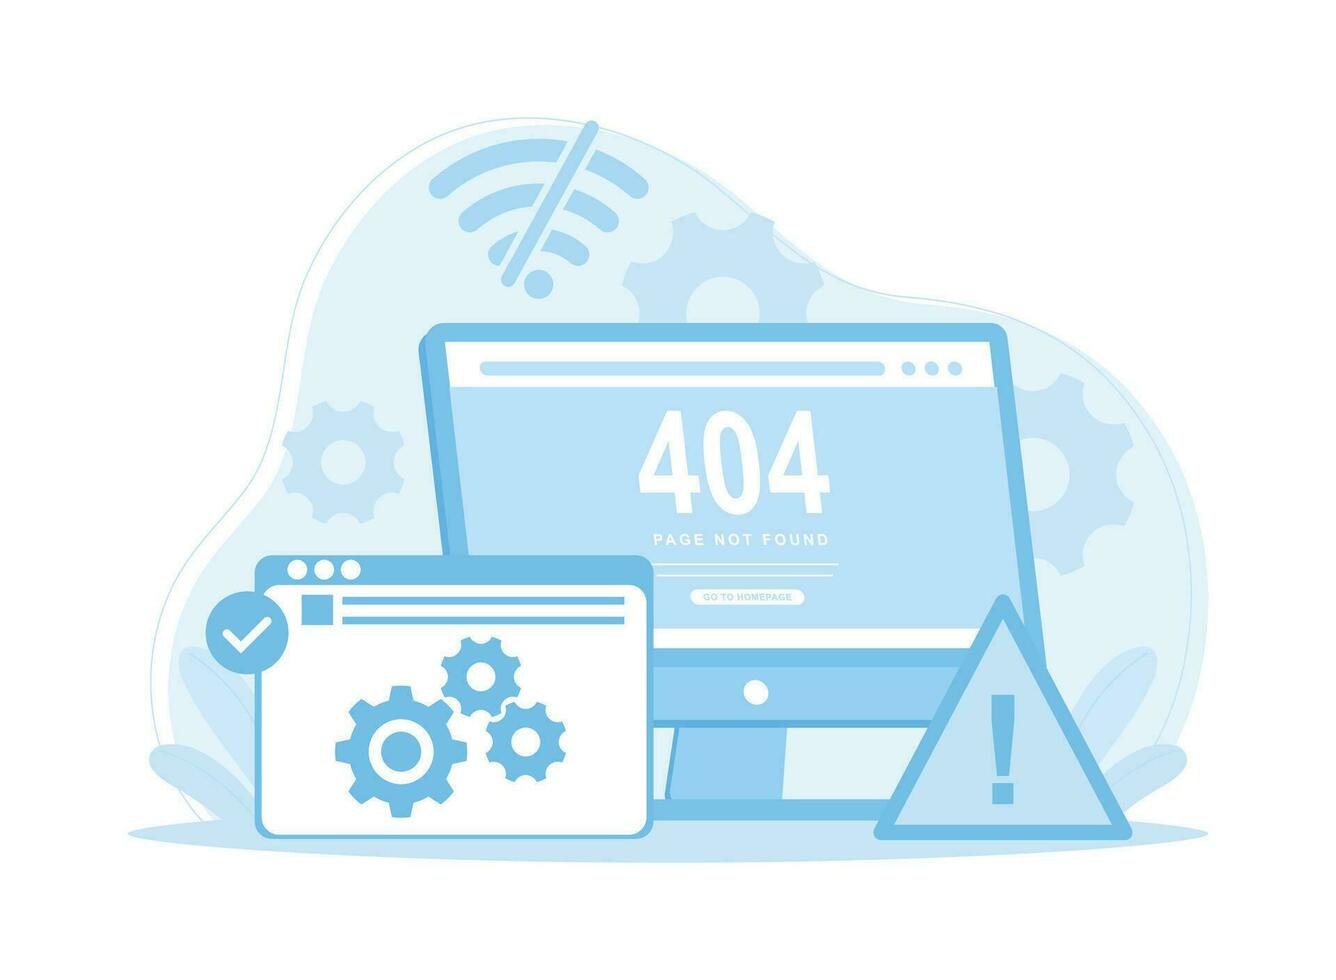 ordinateur écran Erreur page 404 concept plat illustration vecteur